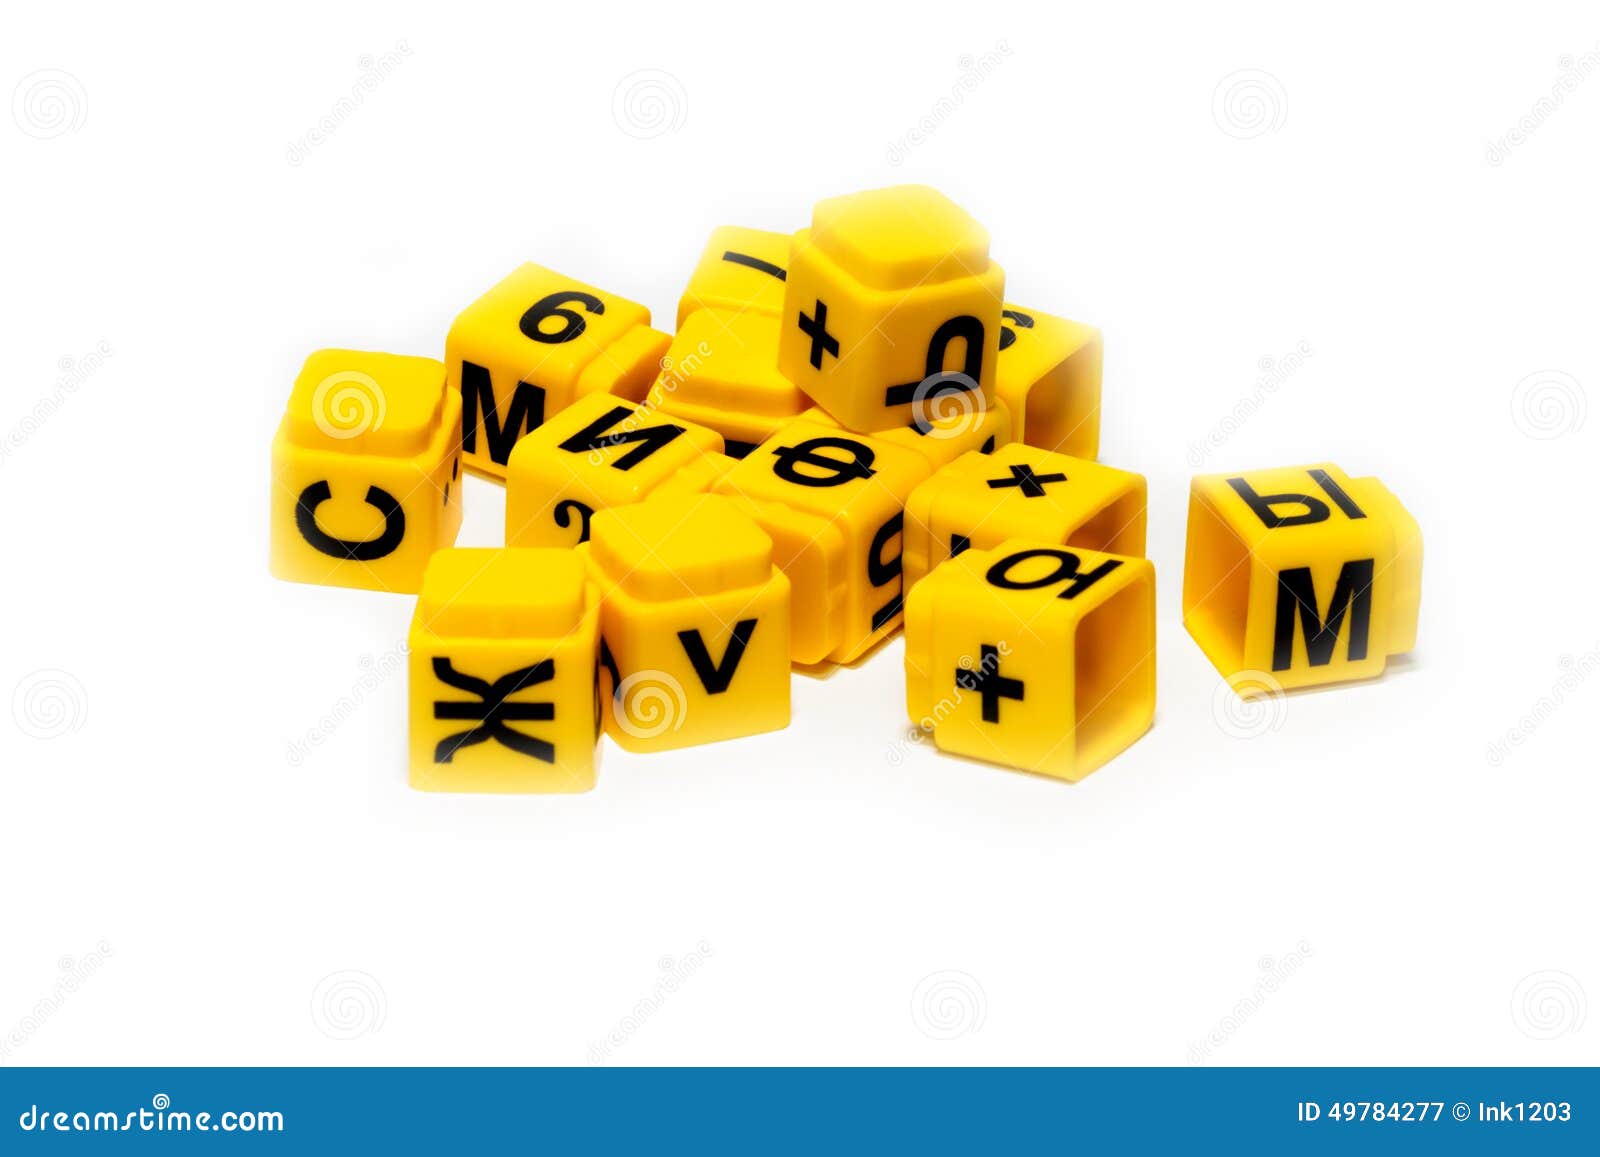 Желтый кубик игра. Желтый кубик. Клипарт желтые кубики. Sale кубики желтые. Изображение желтых кубиков для ресурсов.